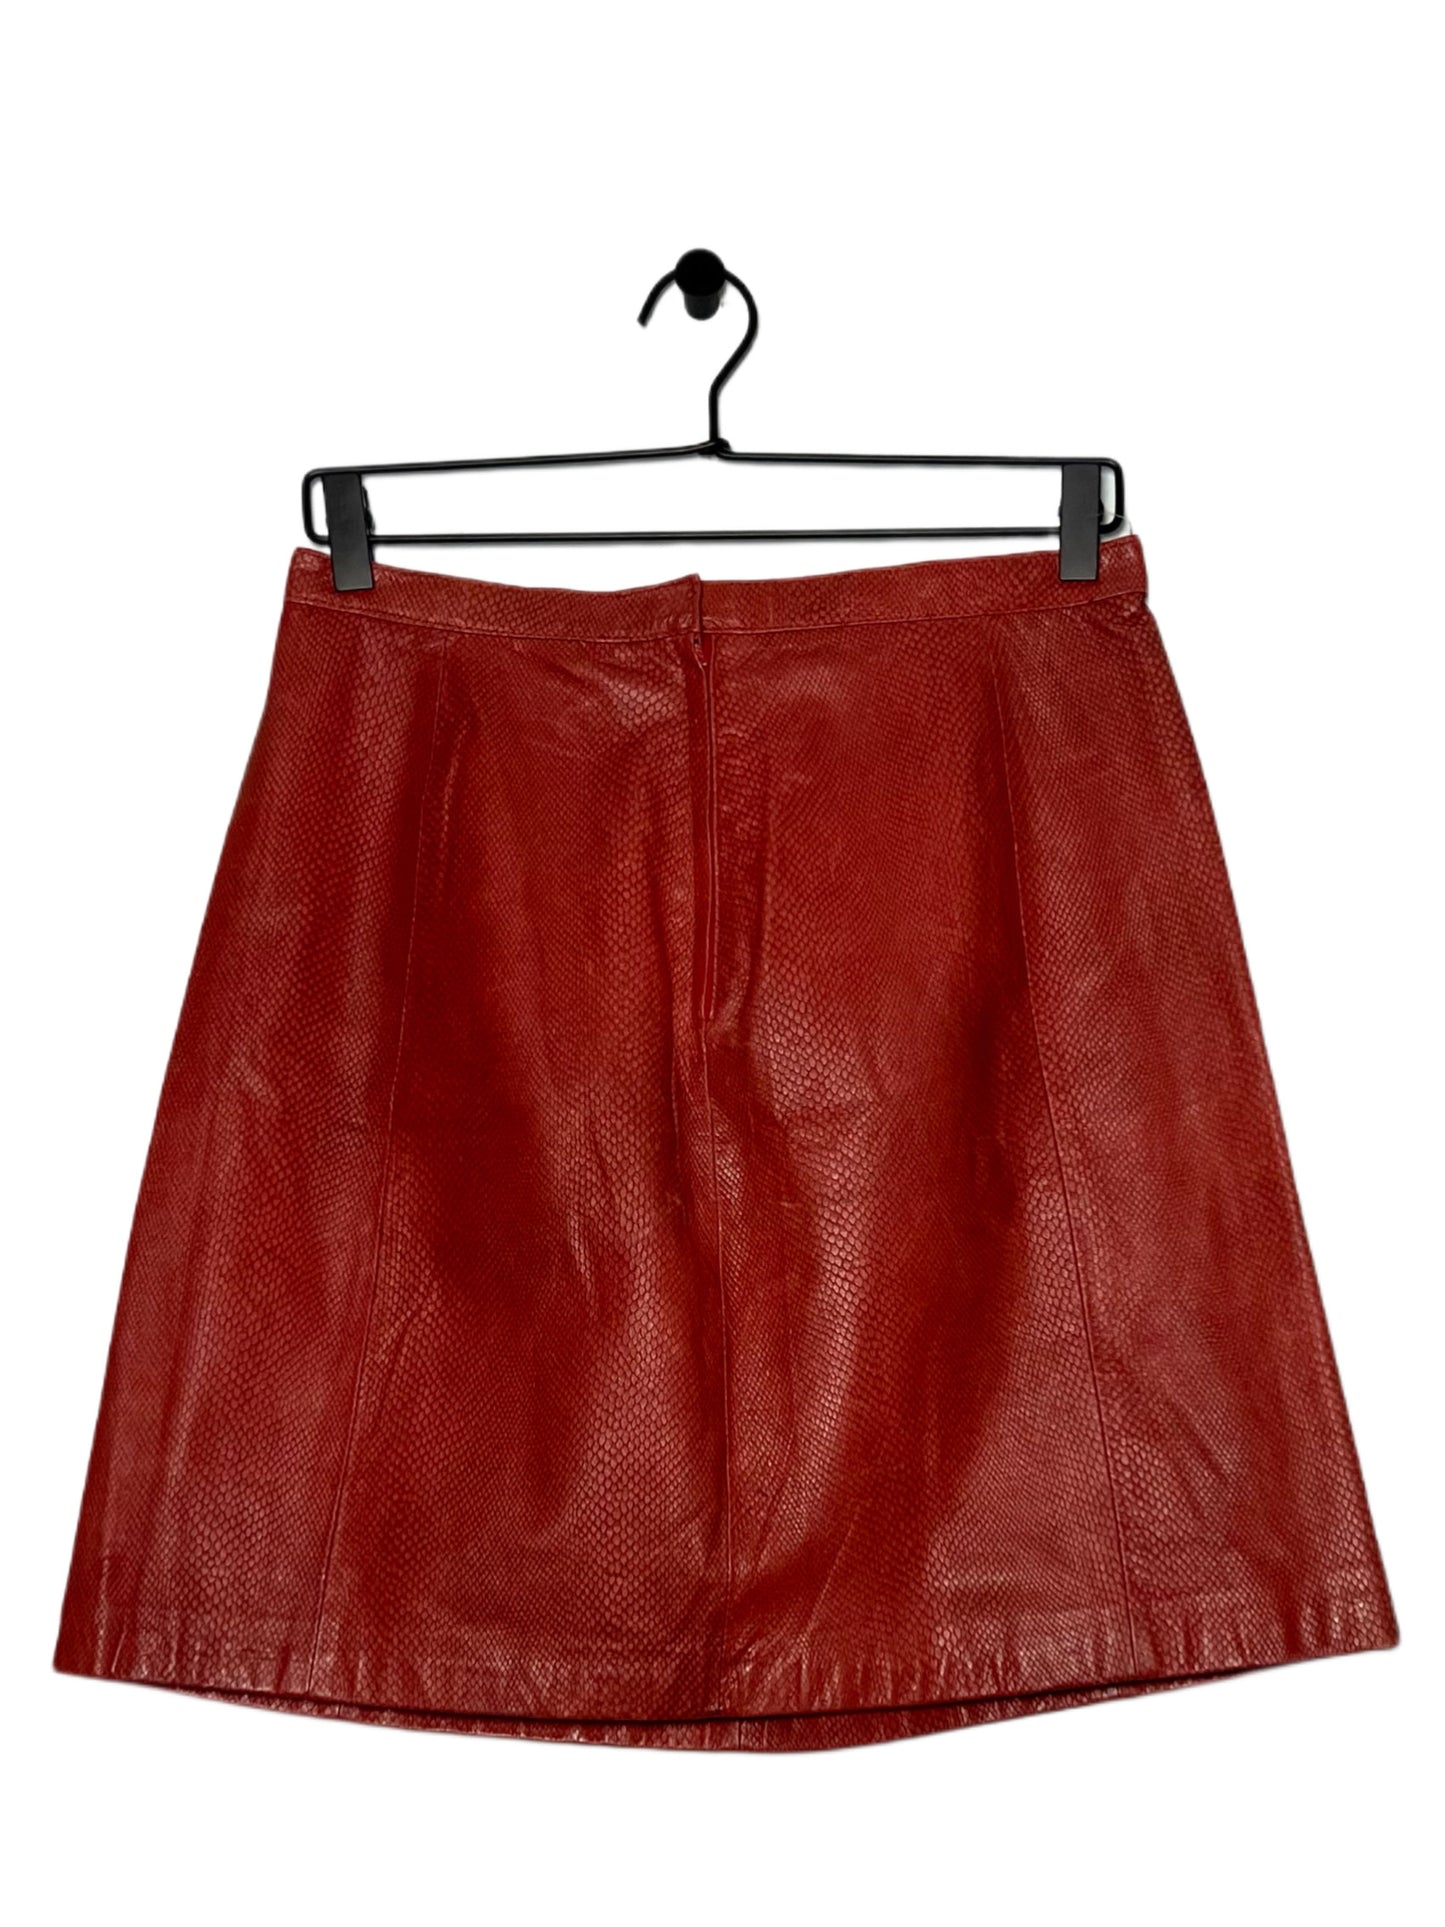 Red Snake Skin Leather Skirt